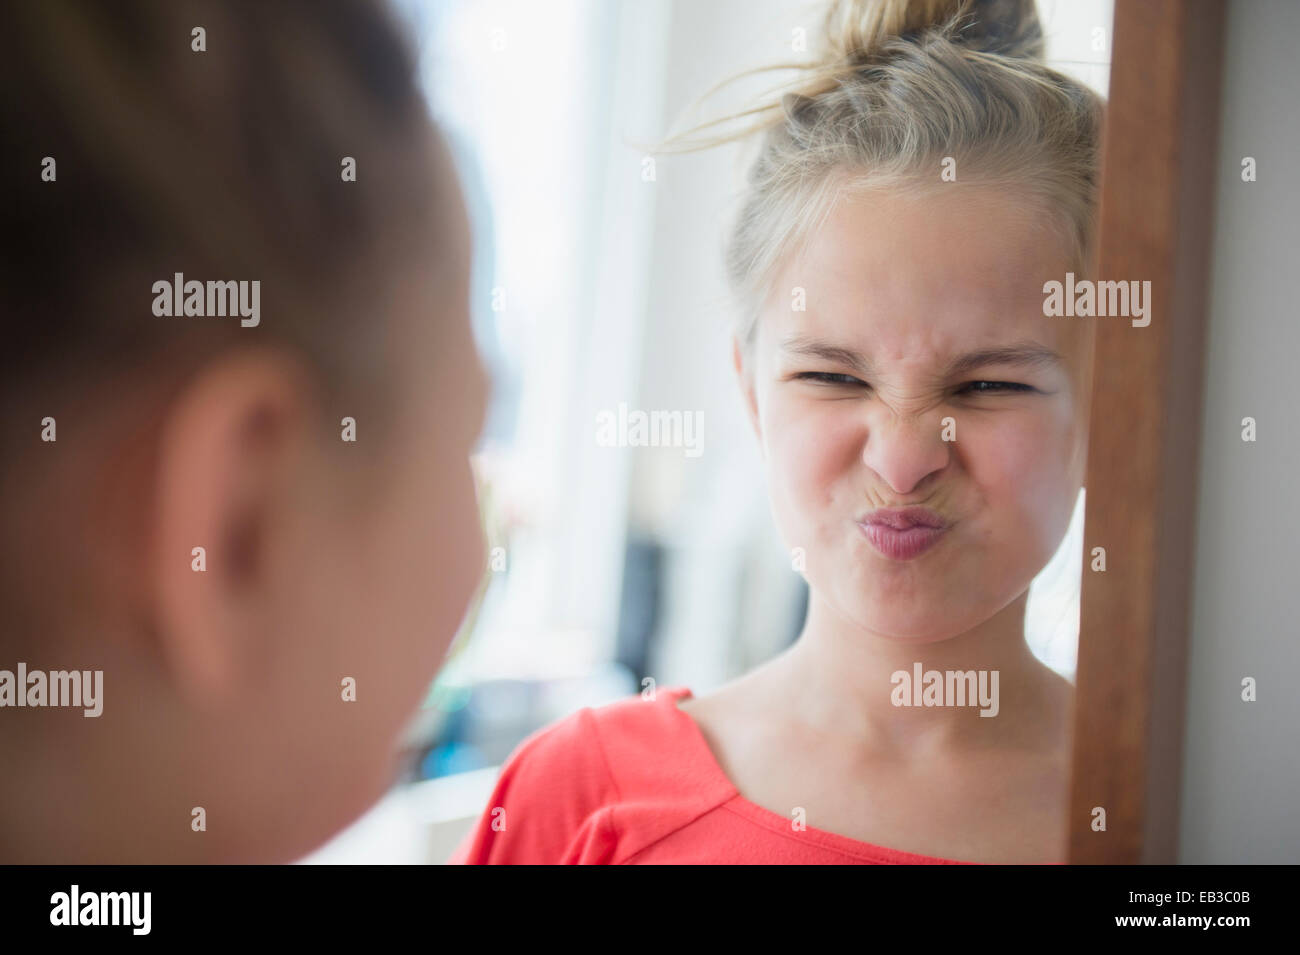 Caucasian girl scrunching jusqu'son visage dans le miroir Banque D'Images